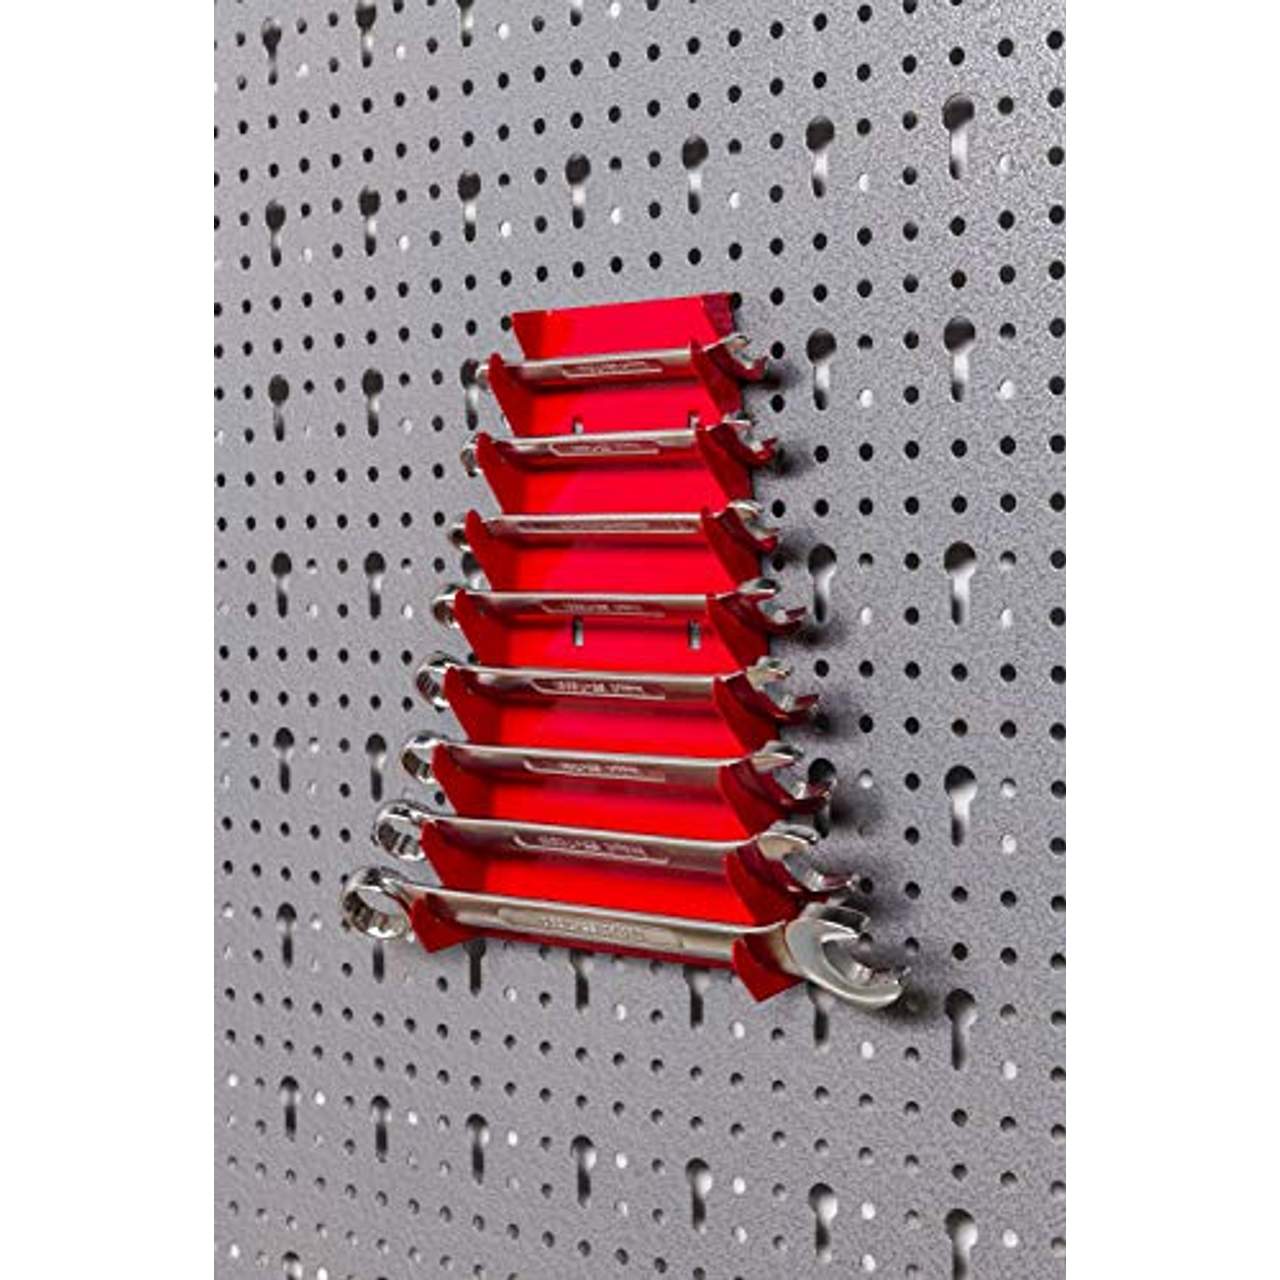 Dreiteilige Werkzeuglochwand aus Metall